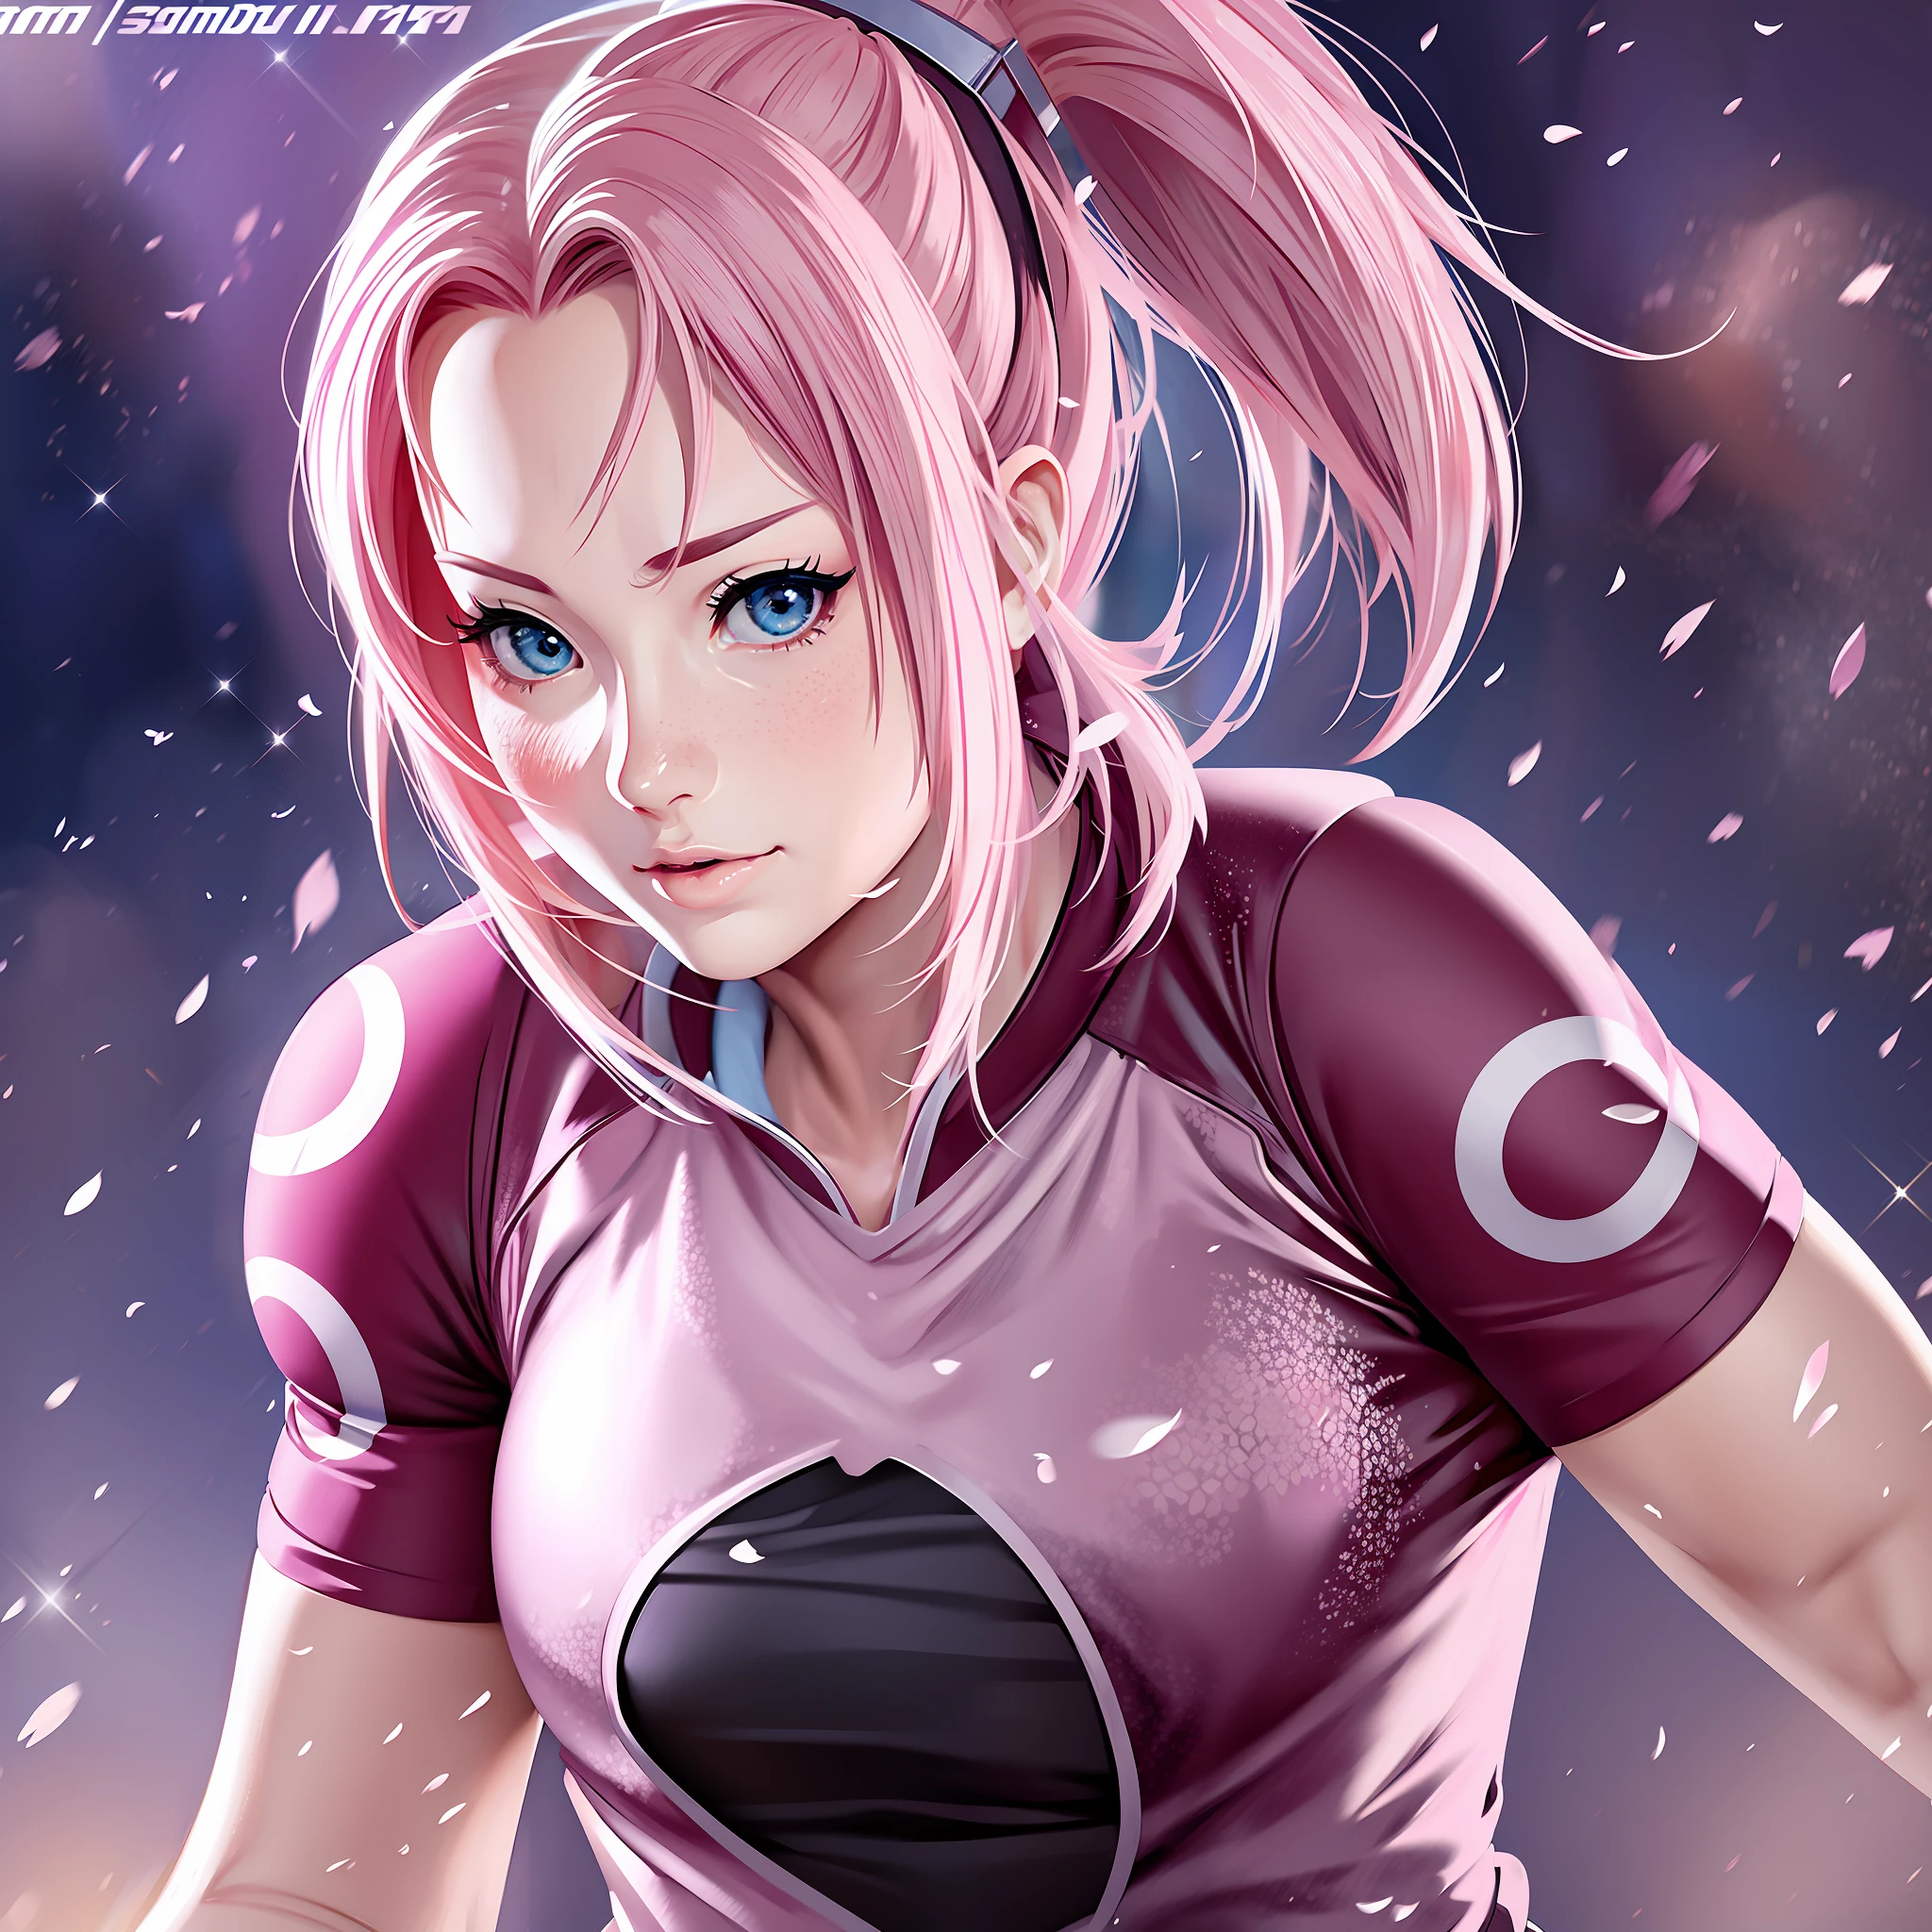 Sakura con la camiseta de fútbol pose sexy anime super realista y bien detallado